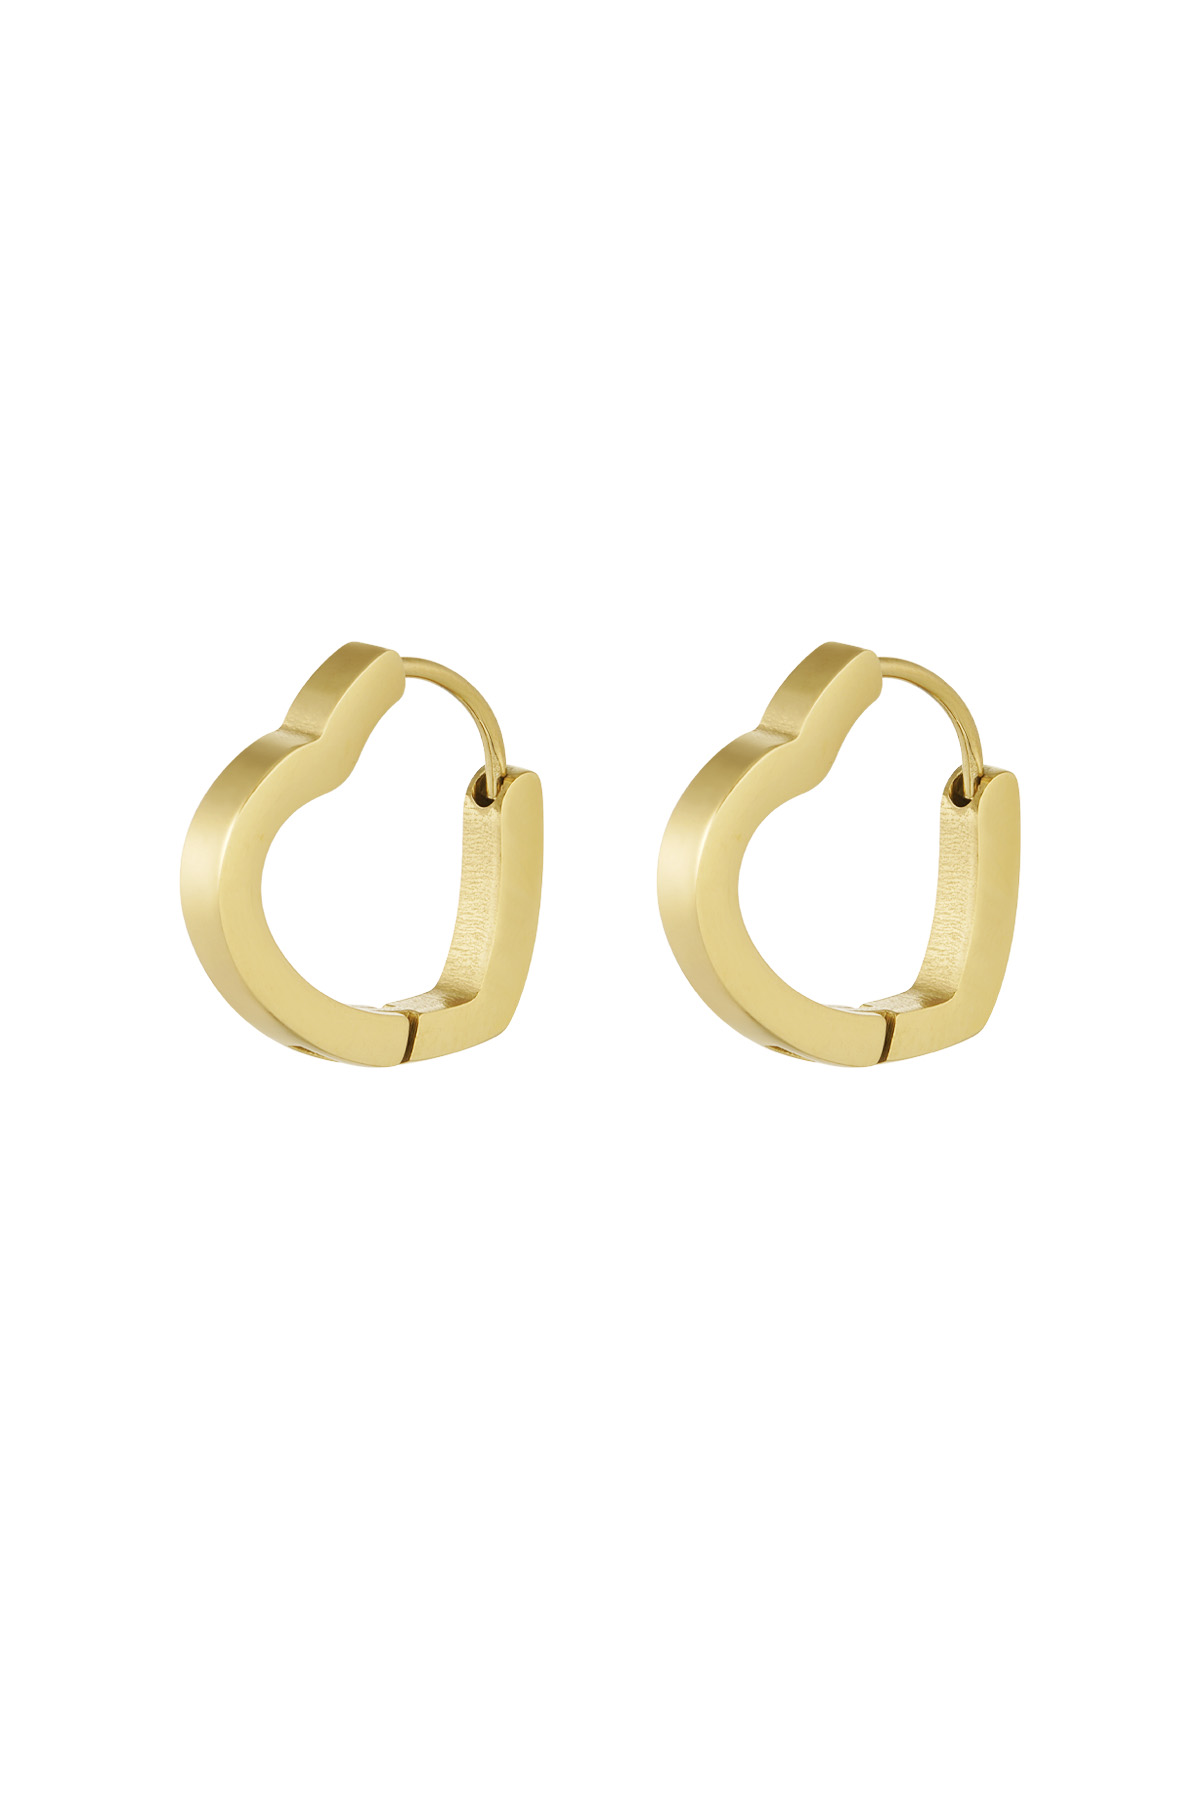 Basic heart earrings large - gold 